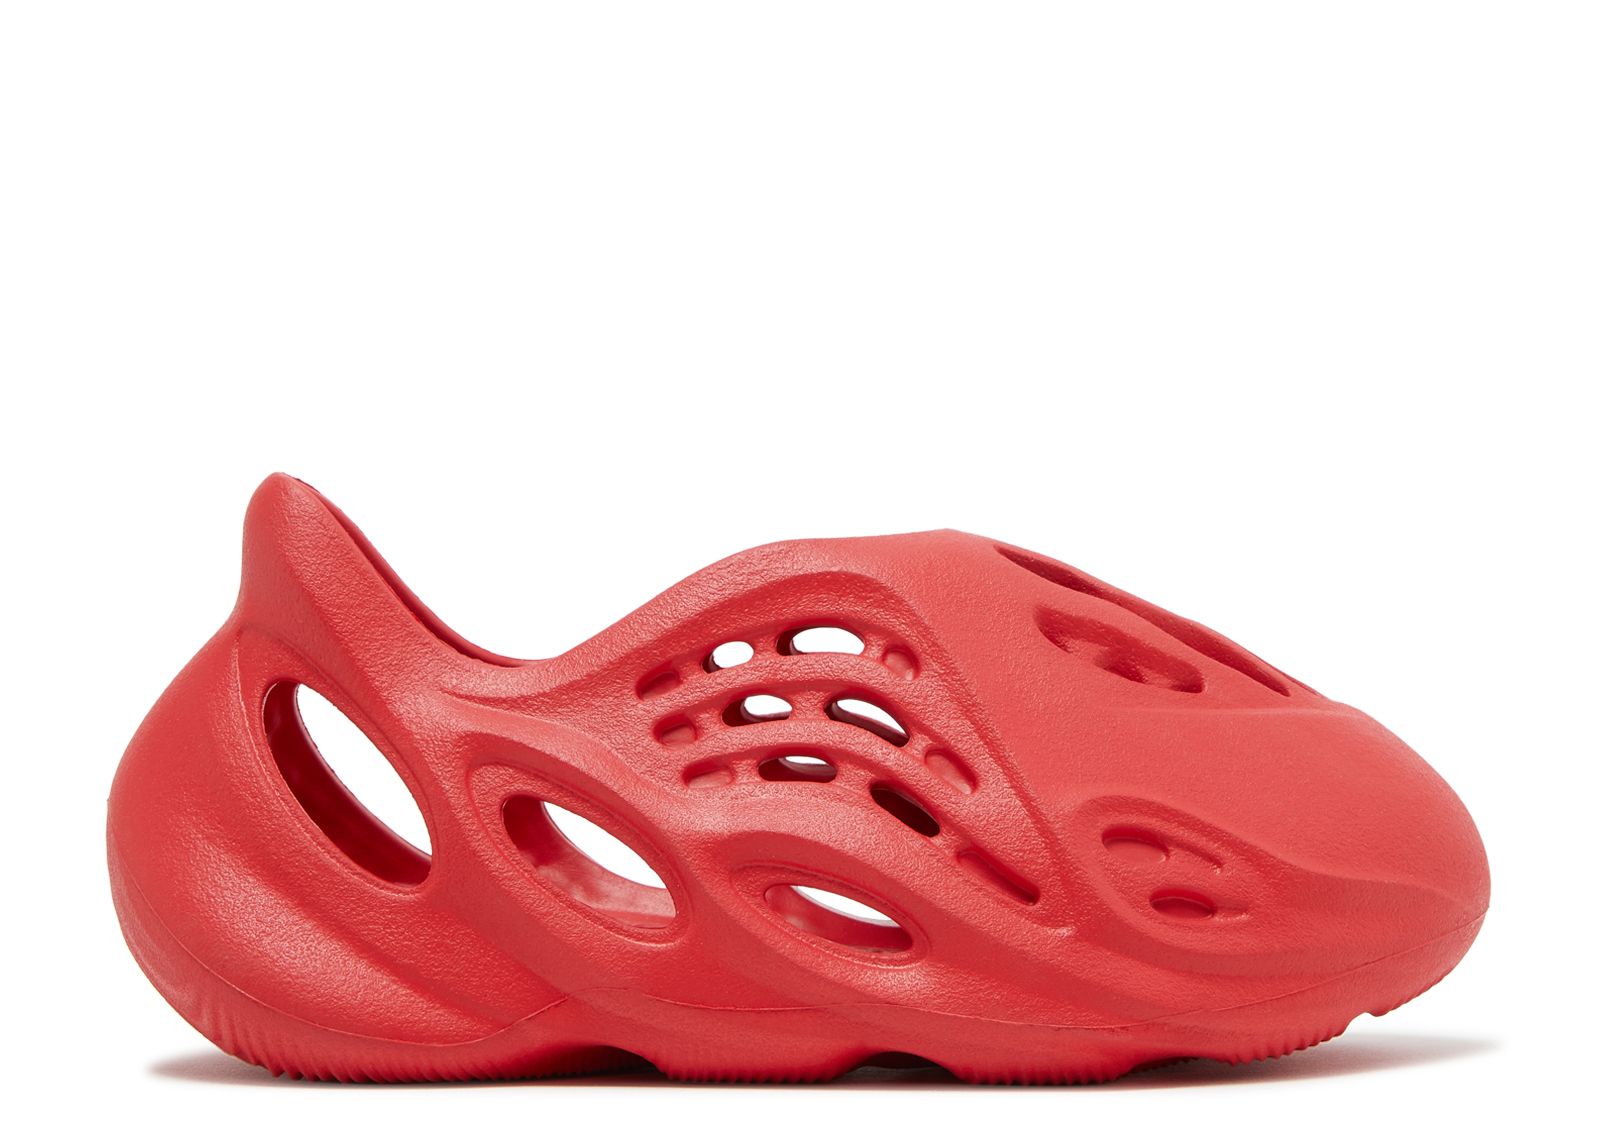 Кроссовки adidas Yeezy Foam Runner Kids 'Vermilion', красный